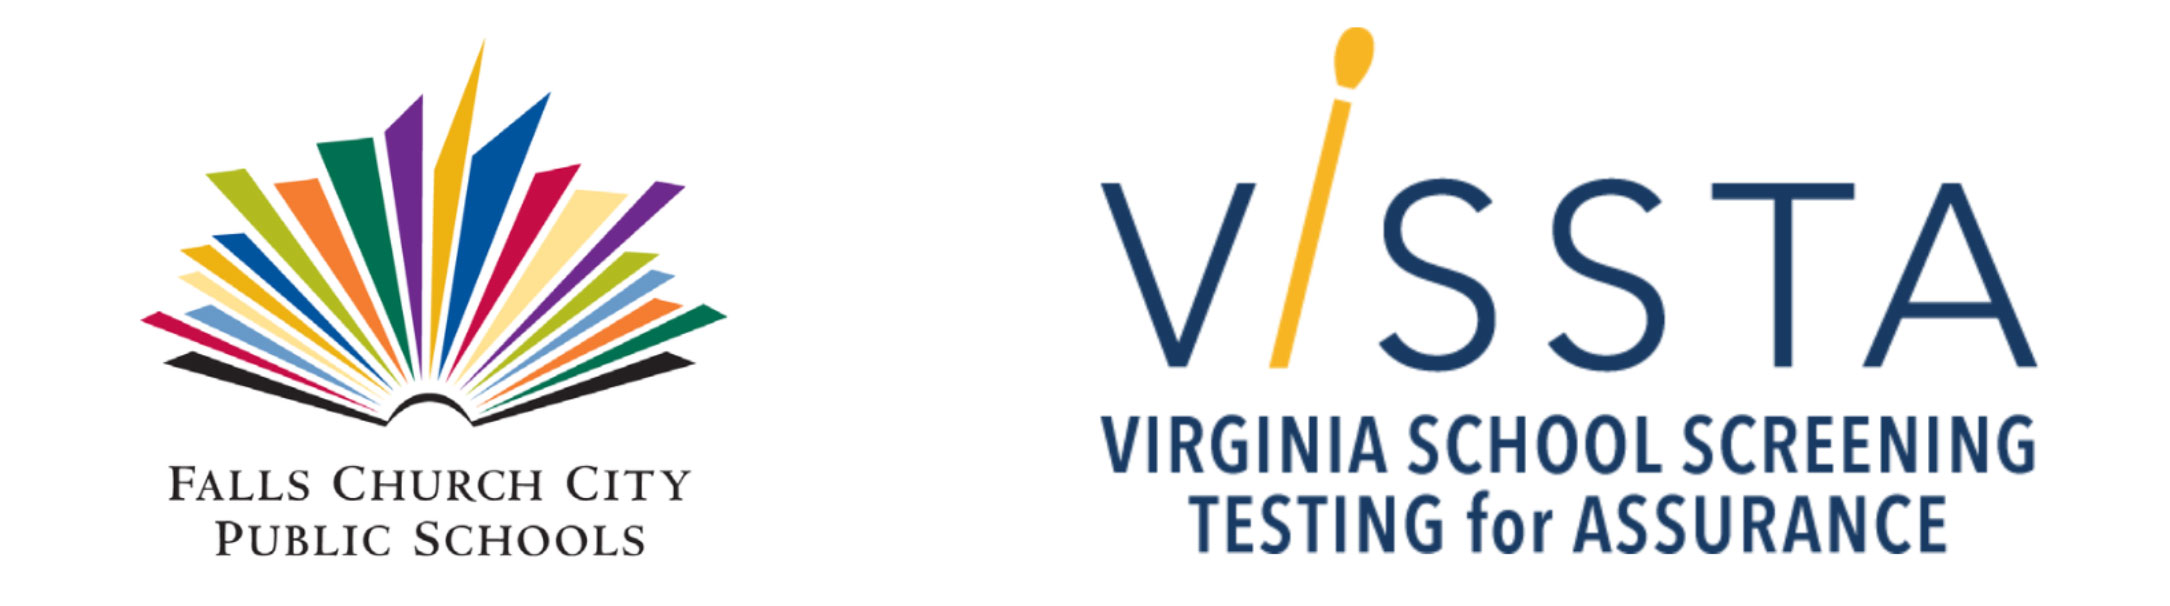 FCCPS ViSSTA Screening Test Program